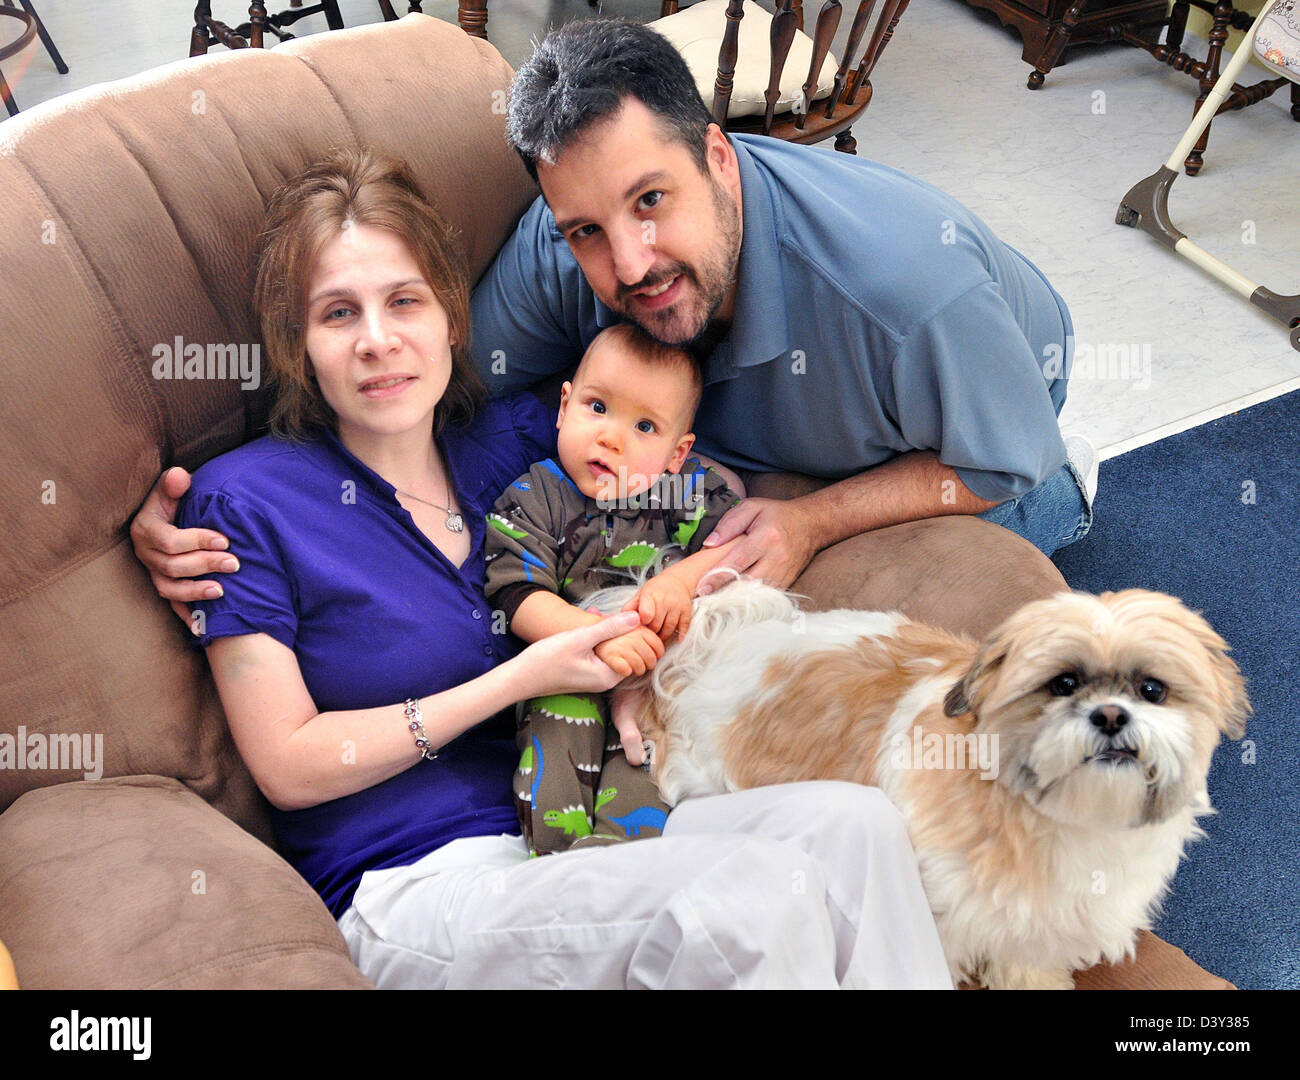 Eine Frau mit Mann und Kind, medizinische Beschlagnahme Schwierigkeiten hat Stockfoto